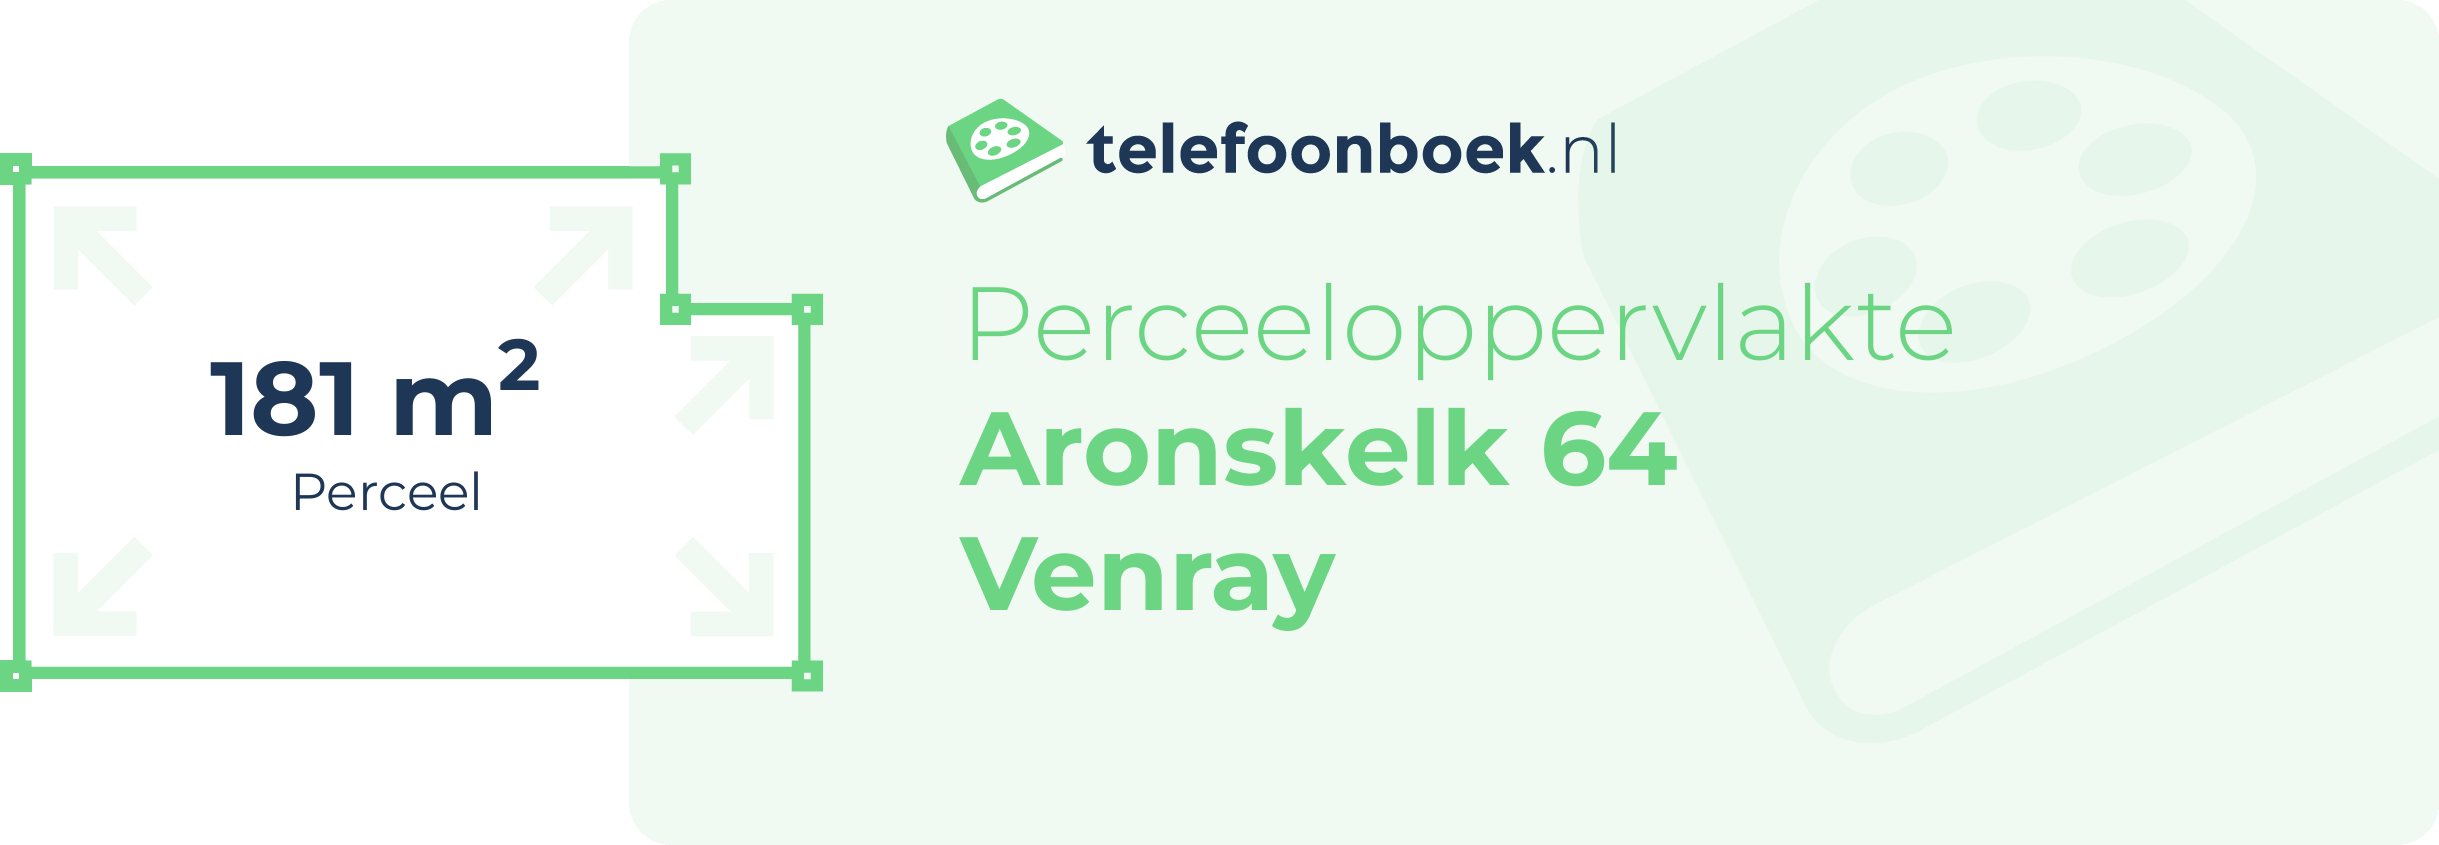 Perceeloppervlakte Aronskelk 64 Venray